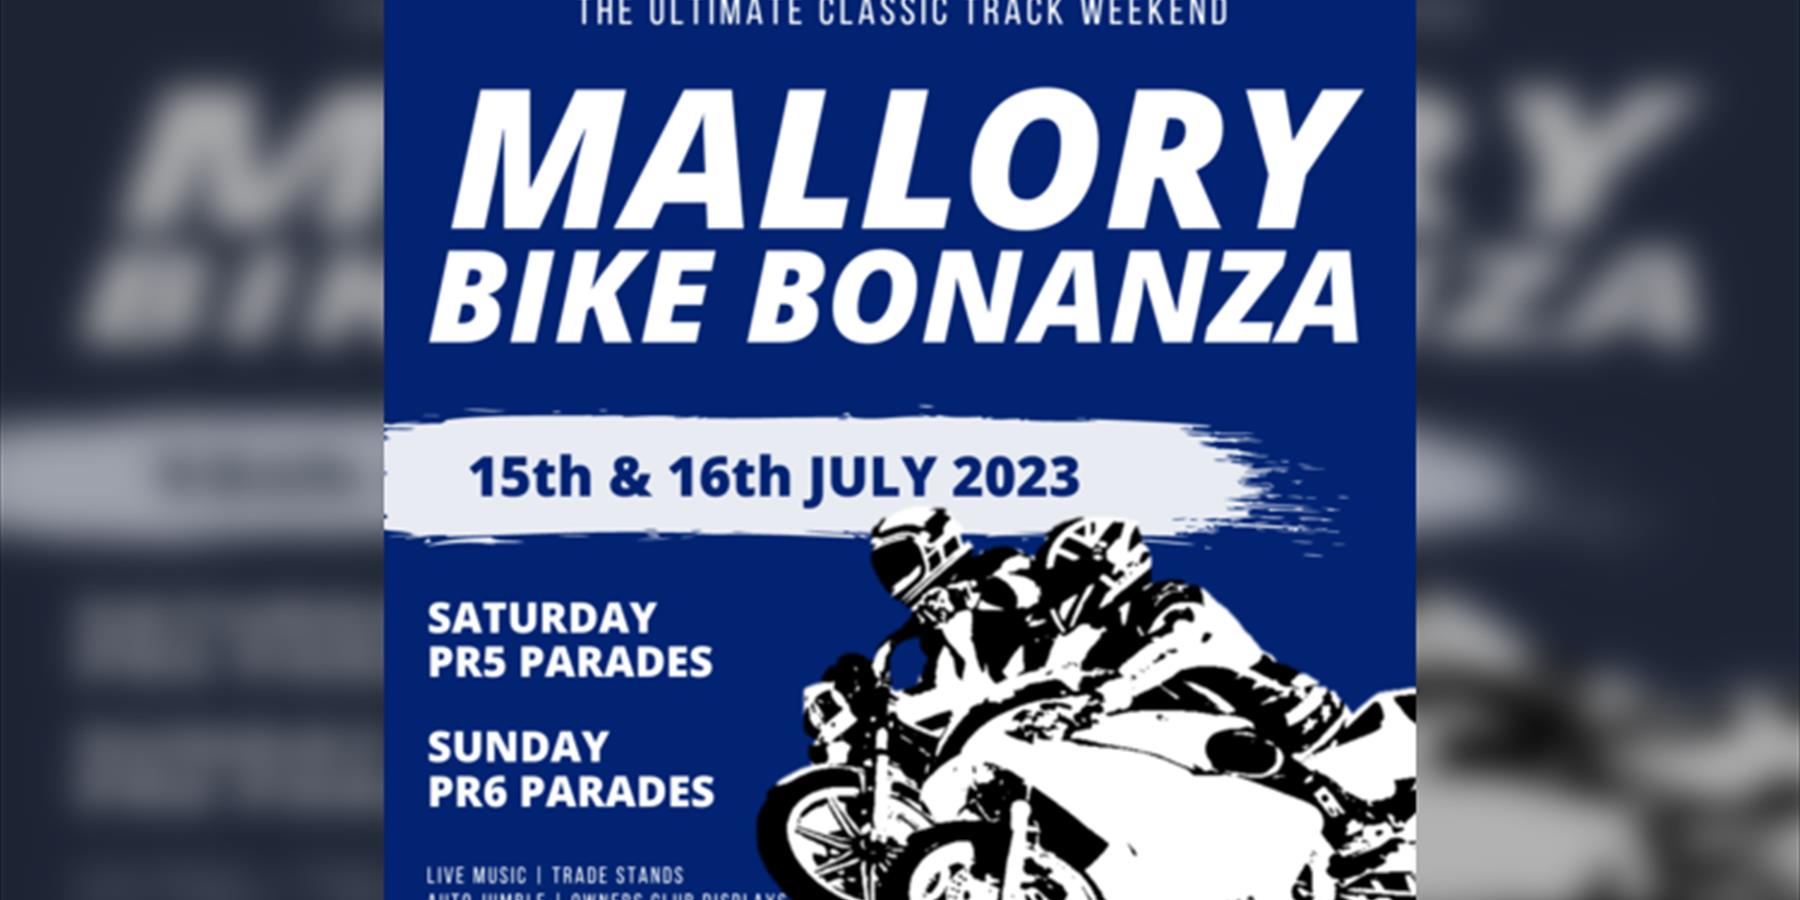 Mallory Bike Bonanza